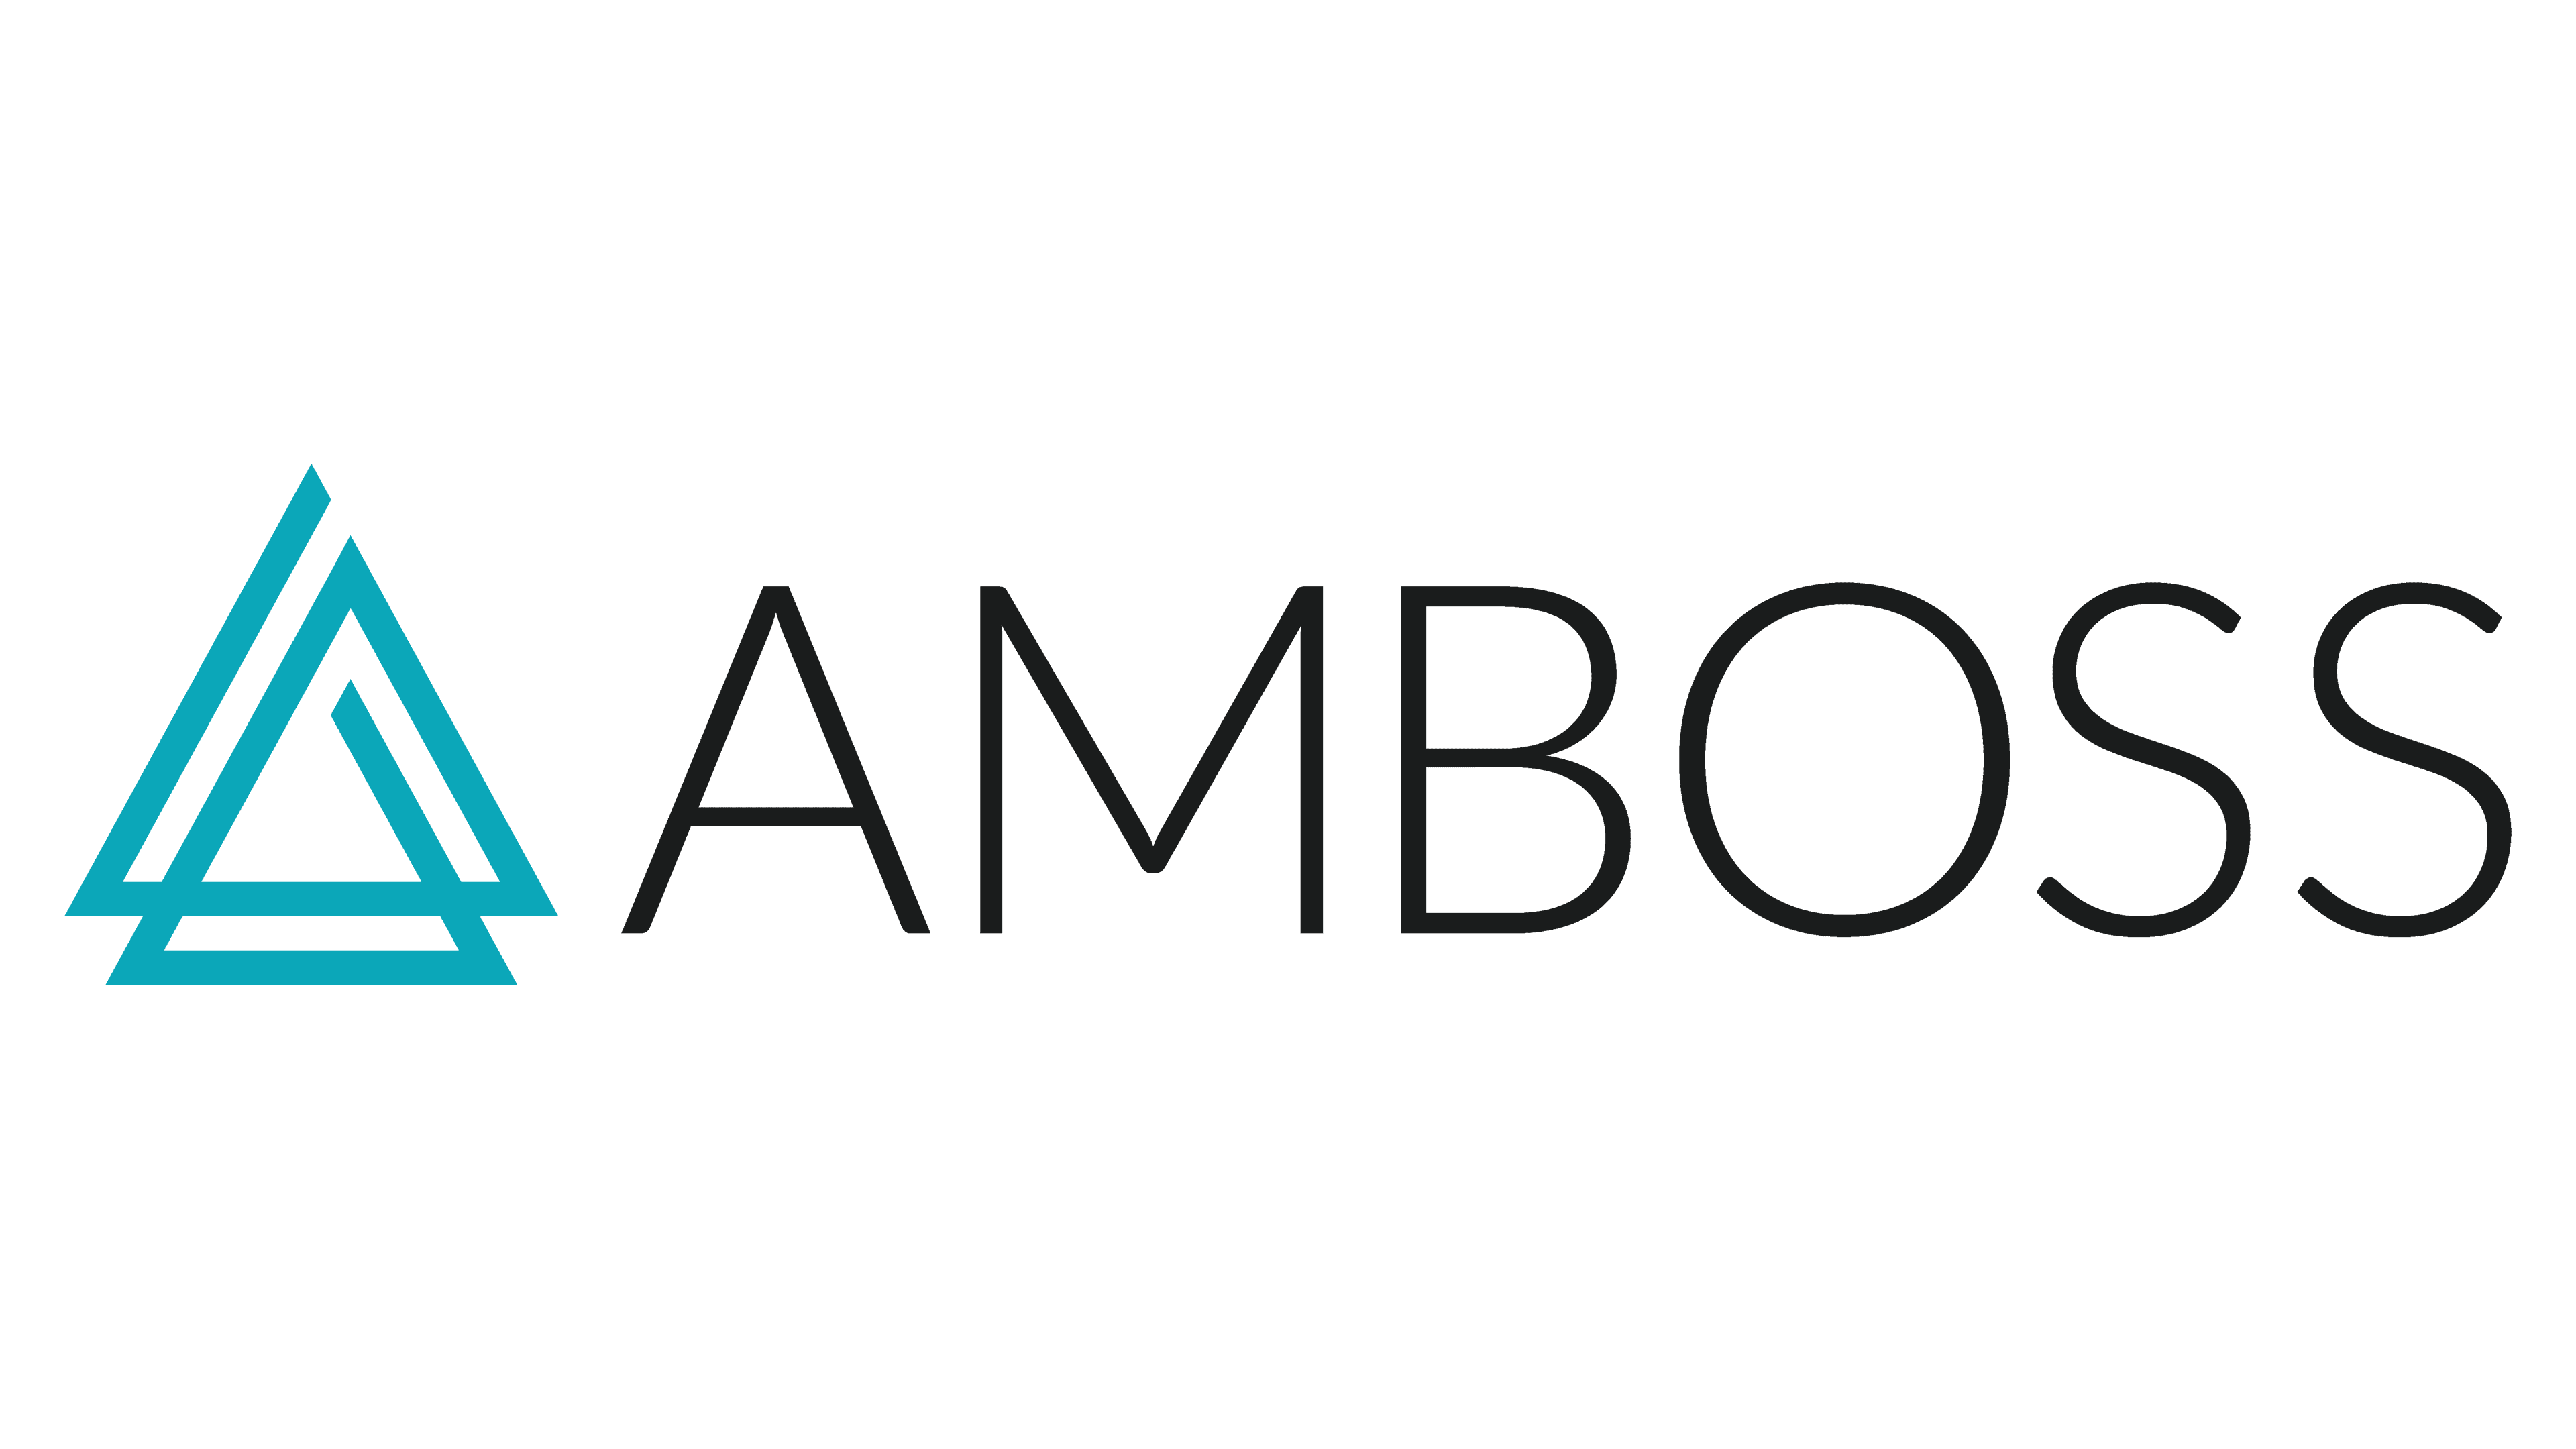 AMBOSS logo